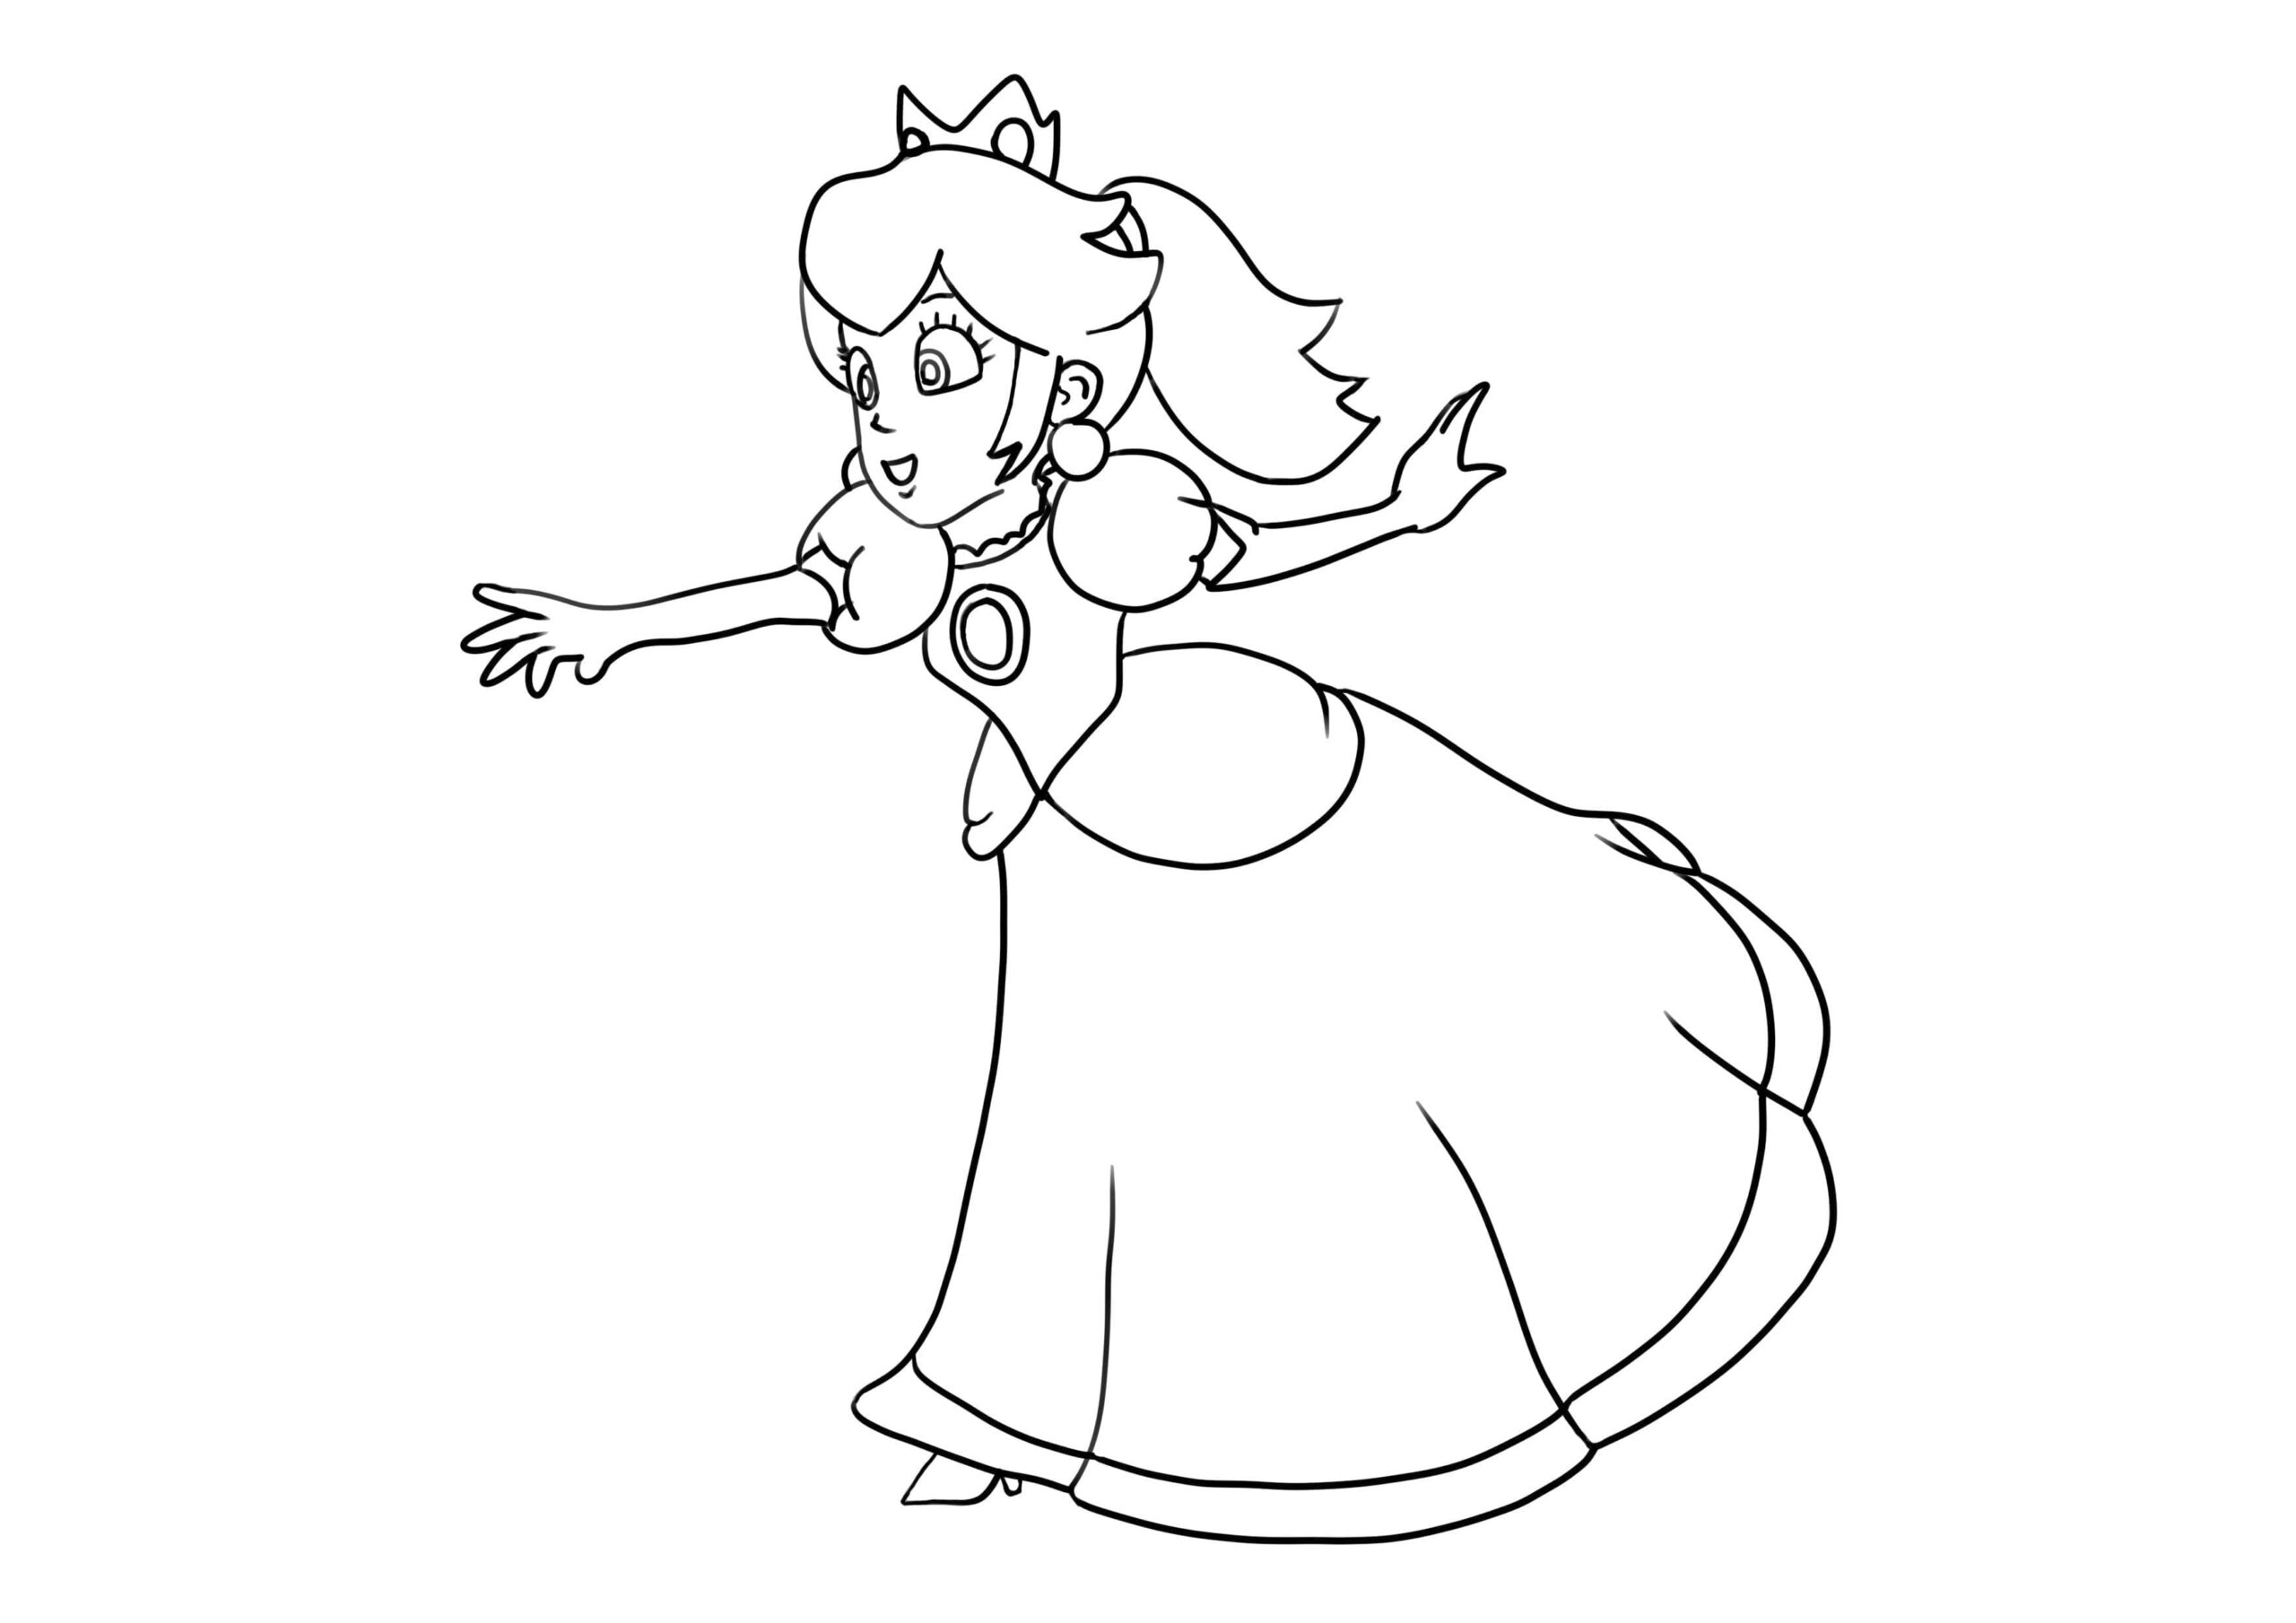 Coloriage Princesse Peach de Mario